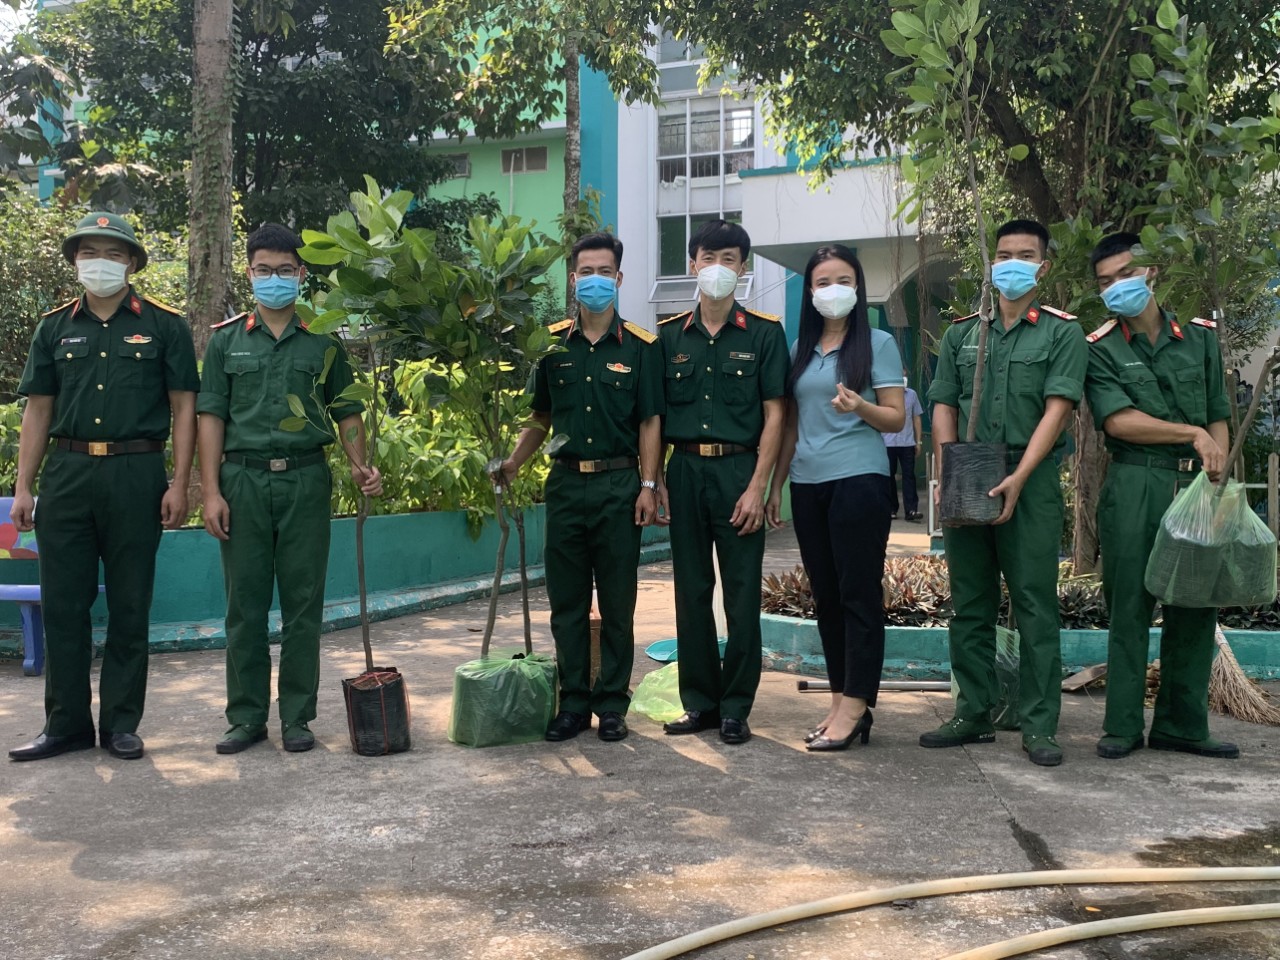 Trường Tiểu học Phú Hòa 3 hưởng ứng phong trào trồng cây xanh bảo vệ môi trường.